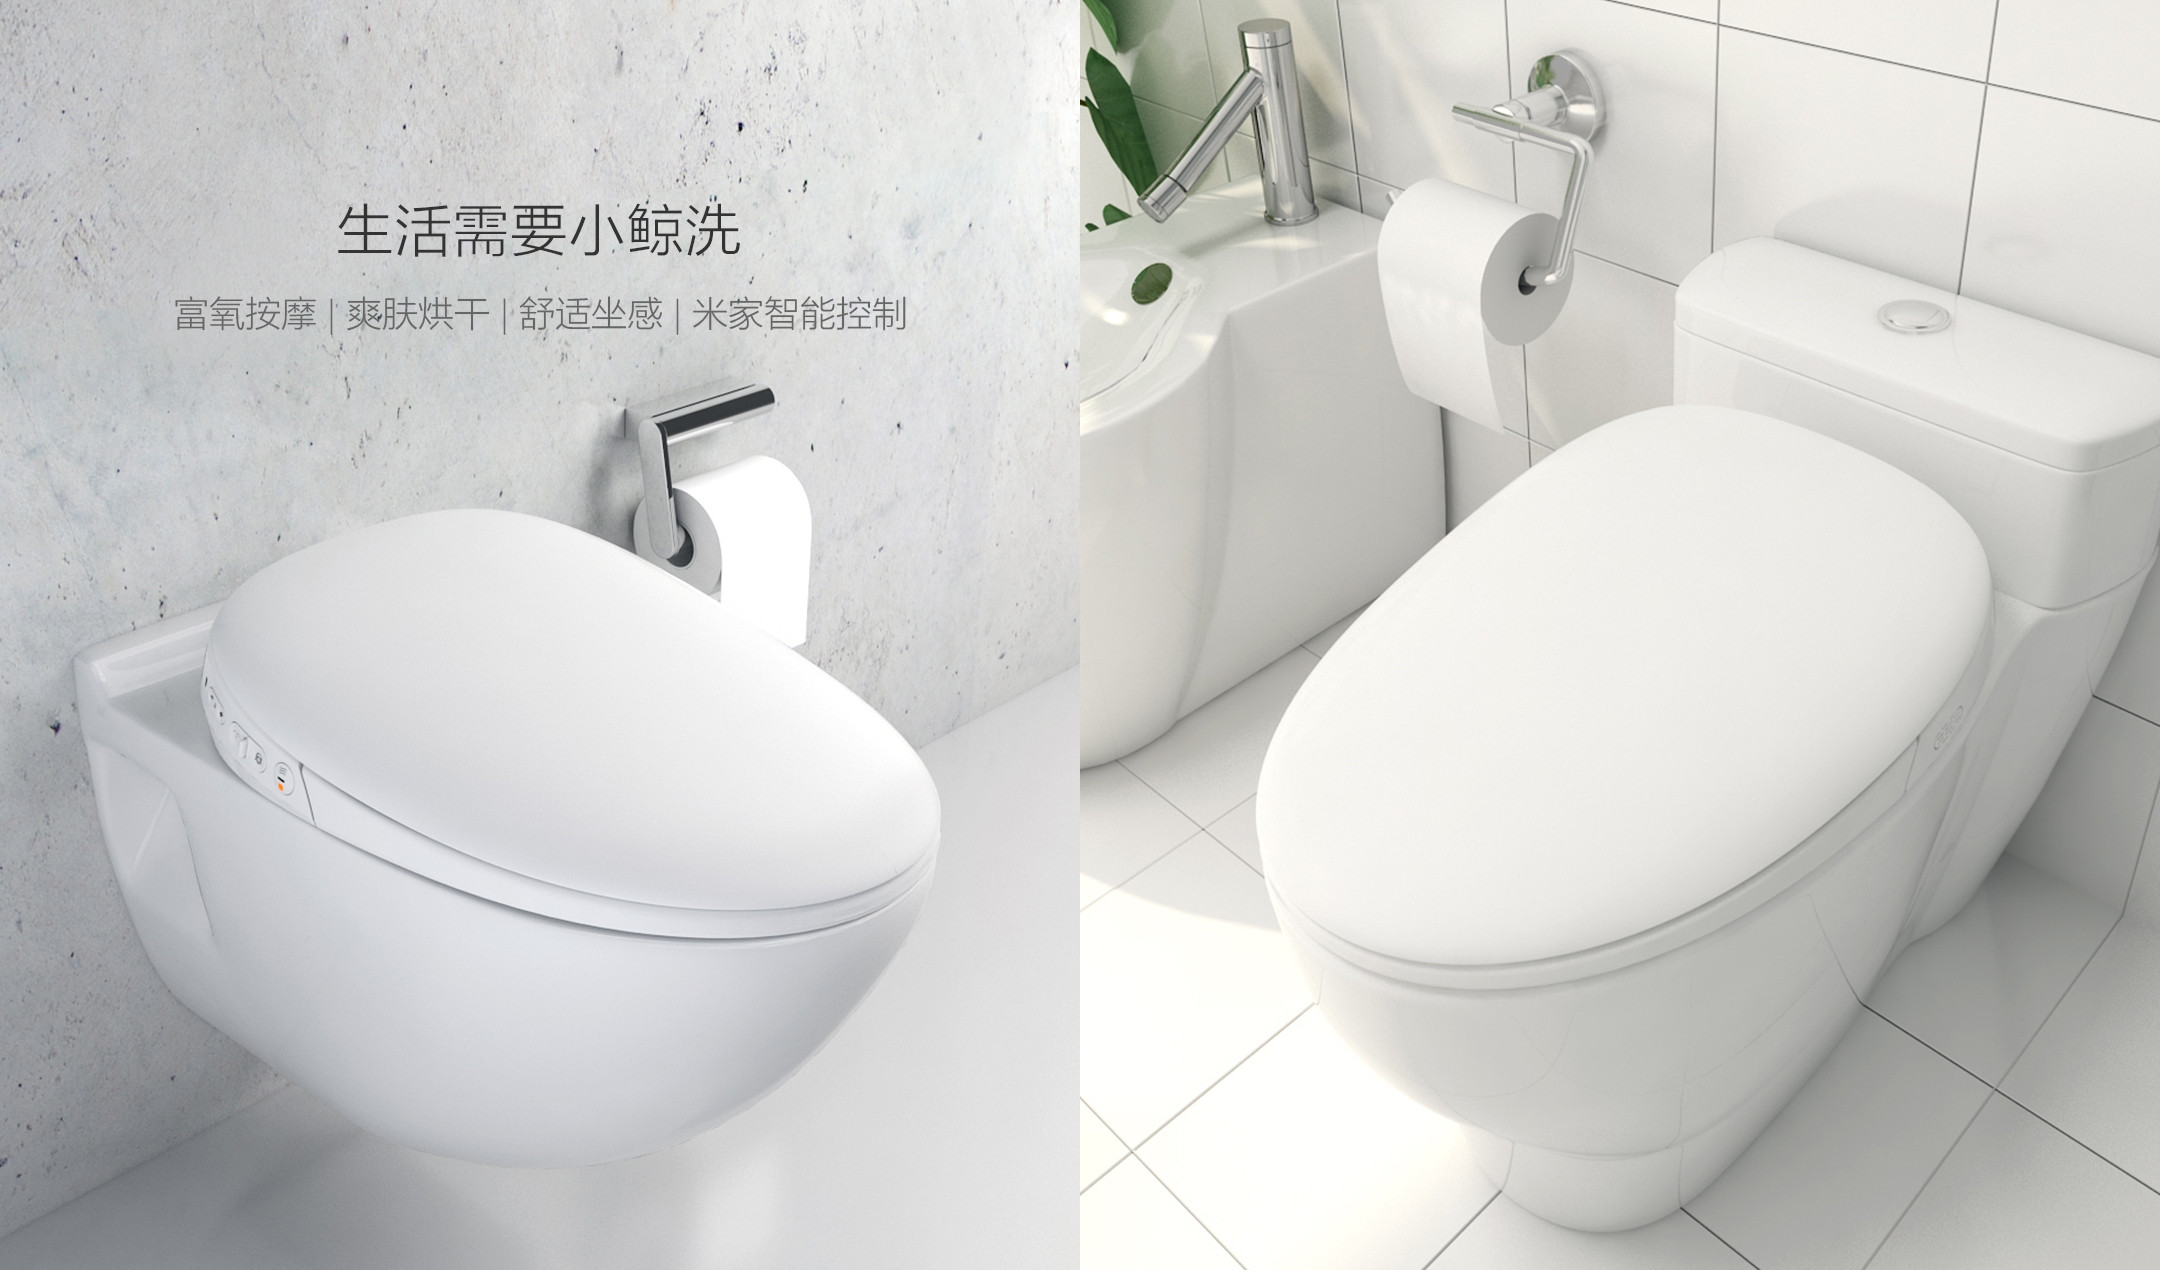 xiaomi-whale-spout-smart-toilet-cover-pro-3.jpg